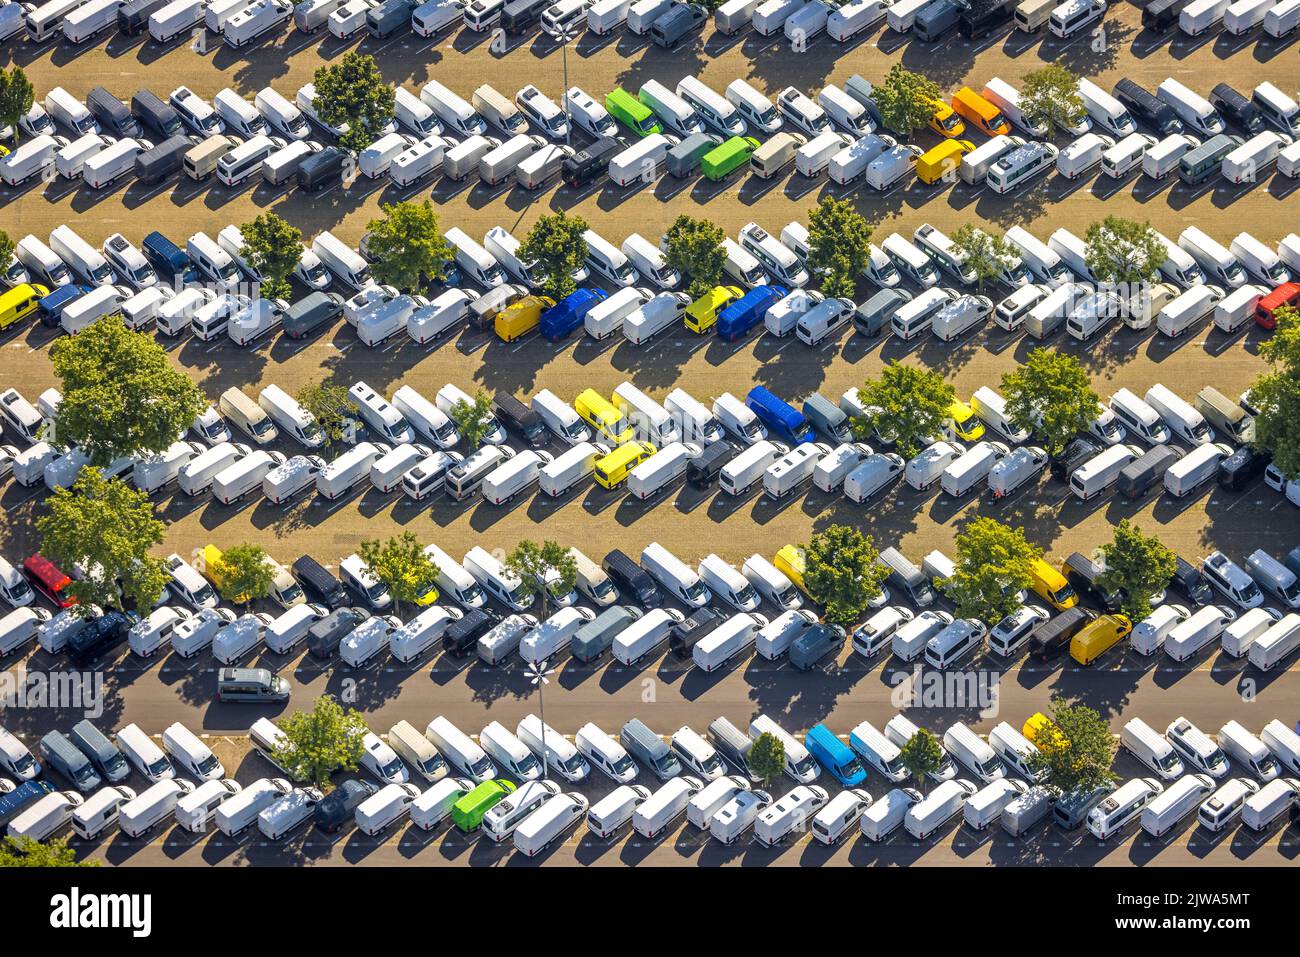 Luftbild, Autohaus Laden Mercedes-Parkplätze, Formen und Farben, Mörsenbroich, Düsseldorf, Rheinland, Nordrhein-Westfalen, Deutschland, Automobili Stockfoto